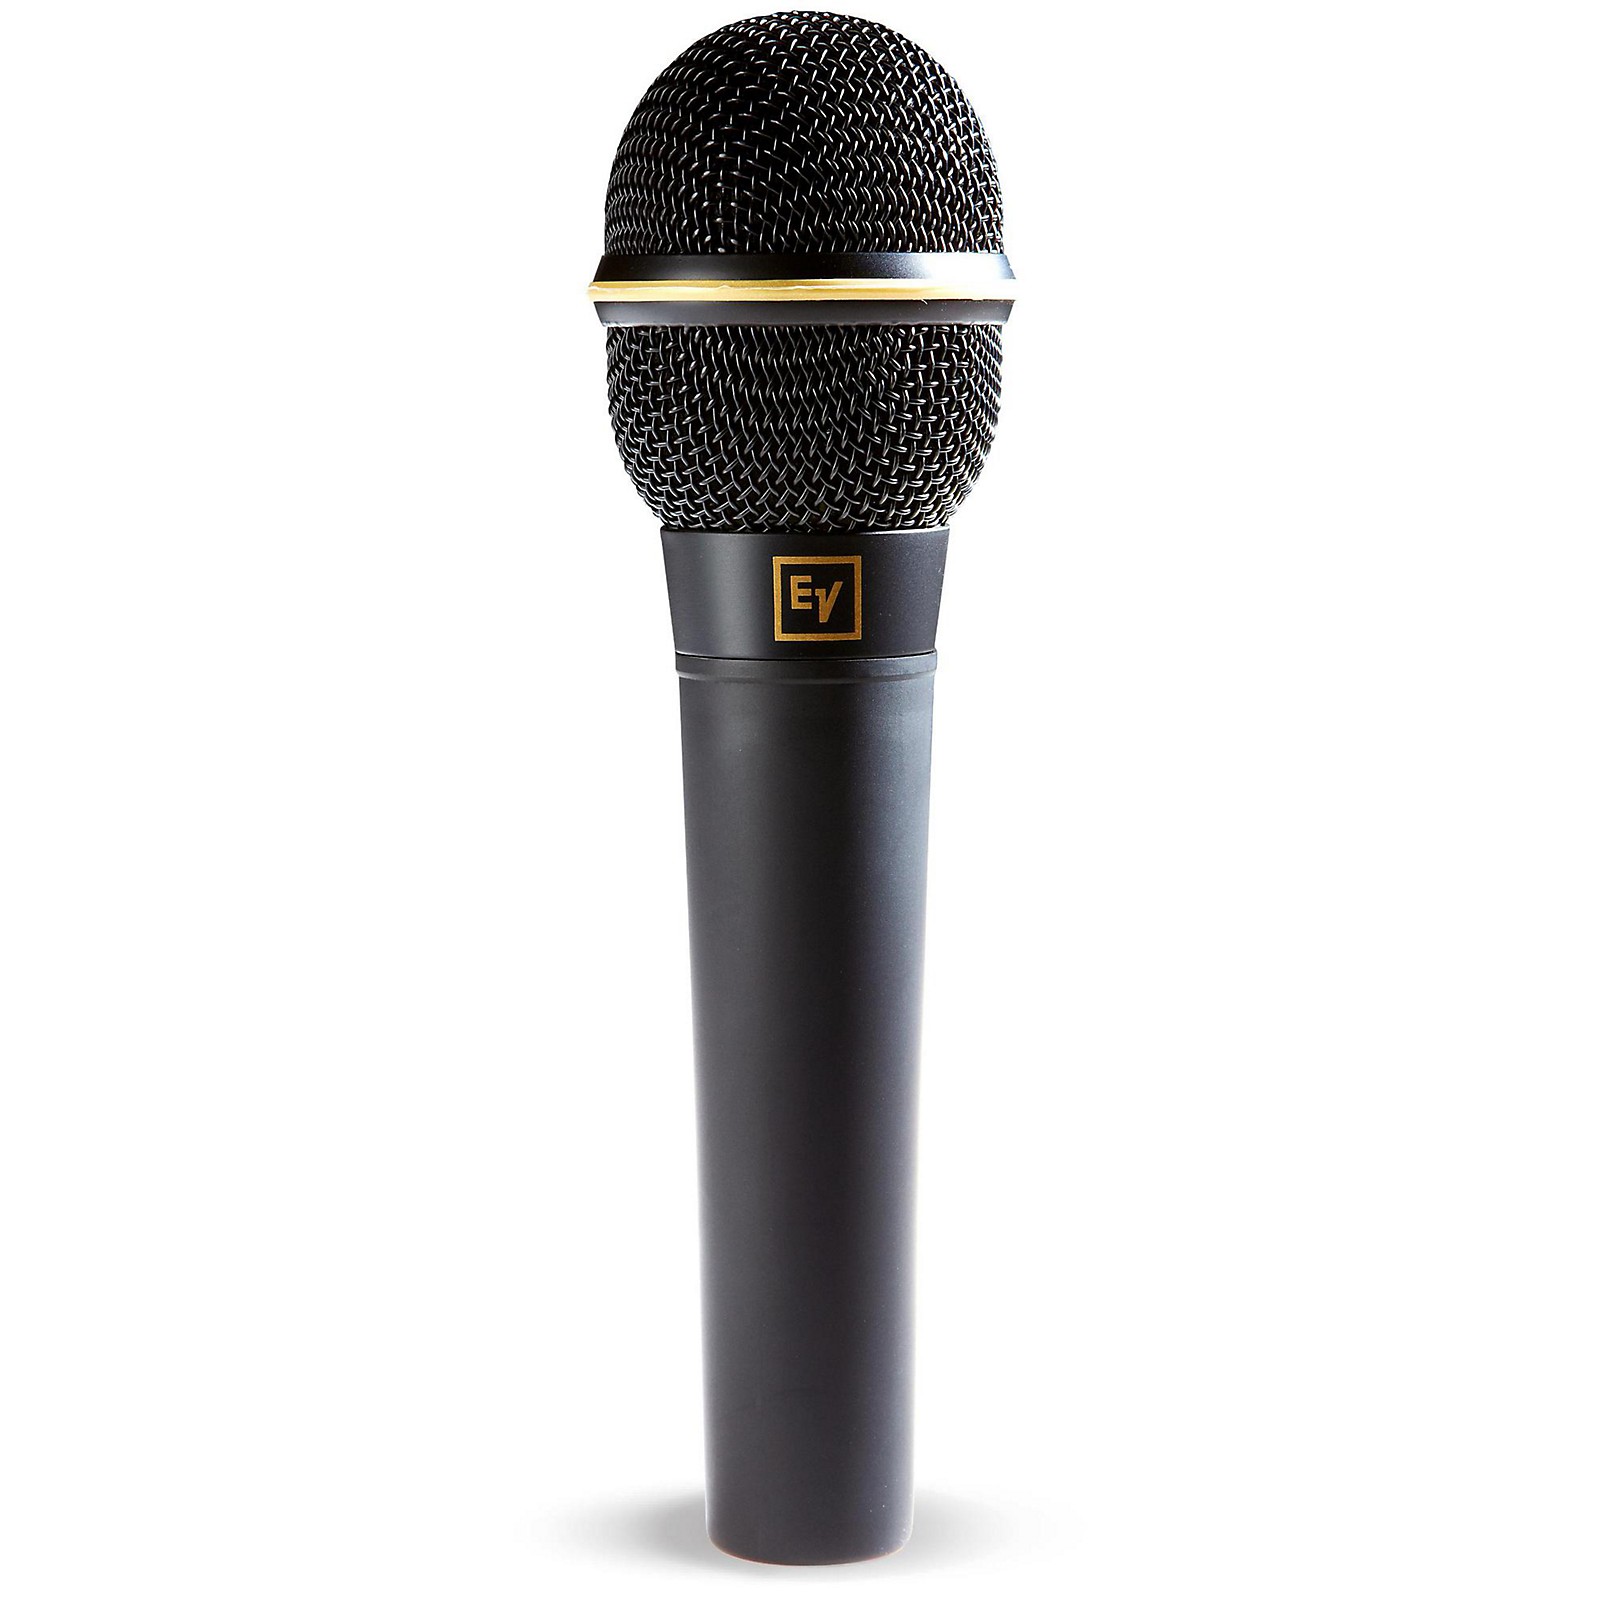 Купить вокальный. Вокальный микрофон Shure sm48s. Микрофон Electro Voice n/d 767а. Volta DM-s58 SW вокальный динамический микрофон. Микрофон volta DM-s58, черный.